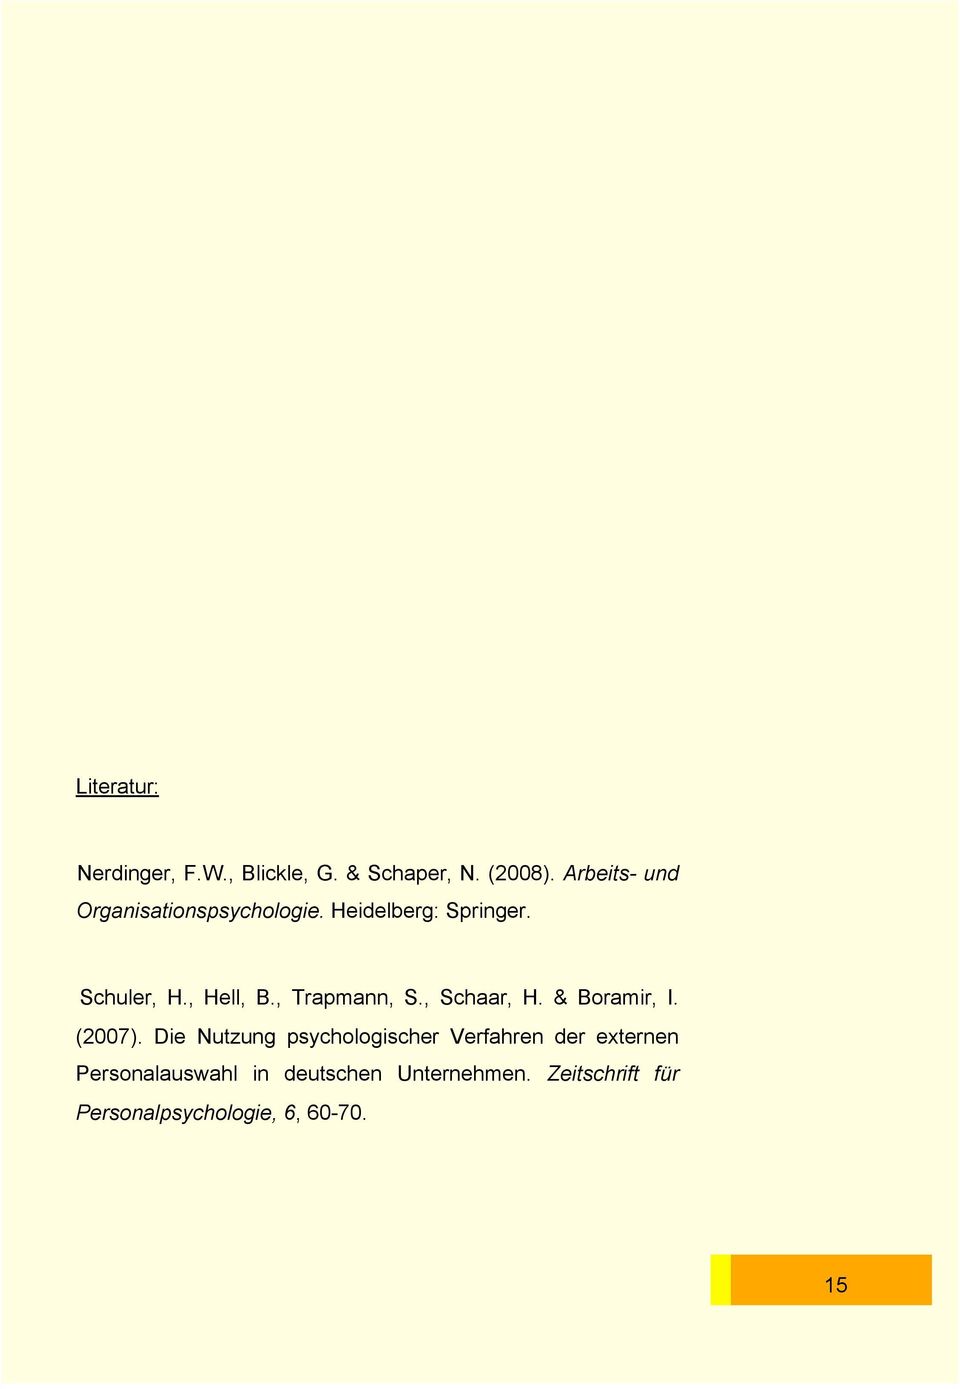 , Trapmann, S., Schaar, H. & Boramir, I. (2007).